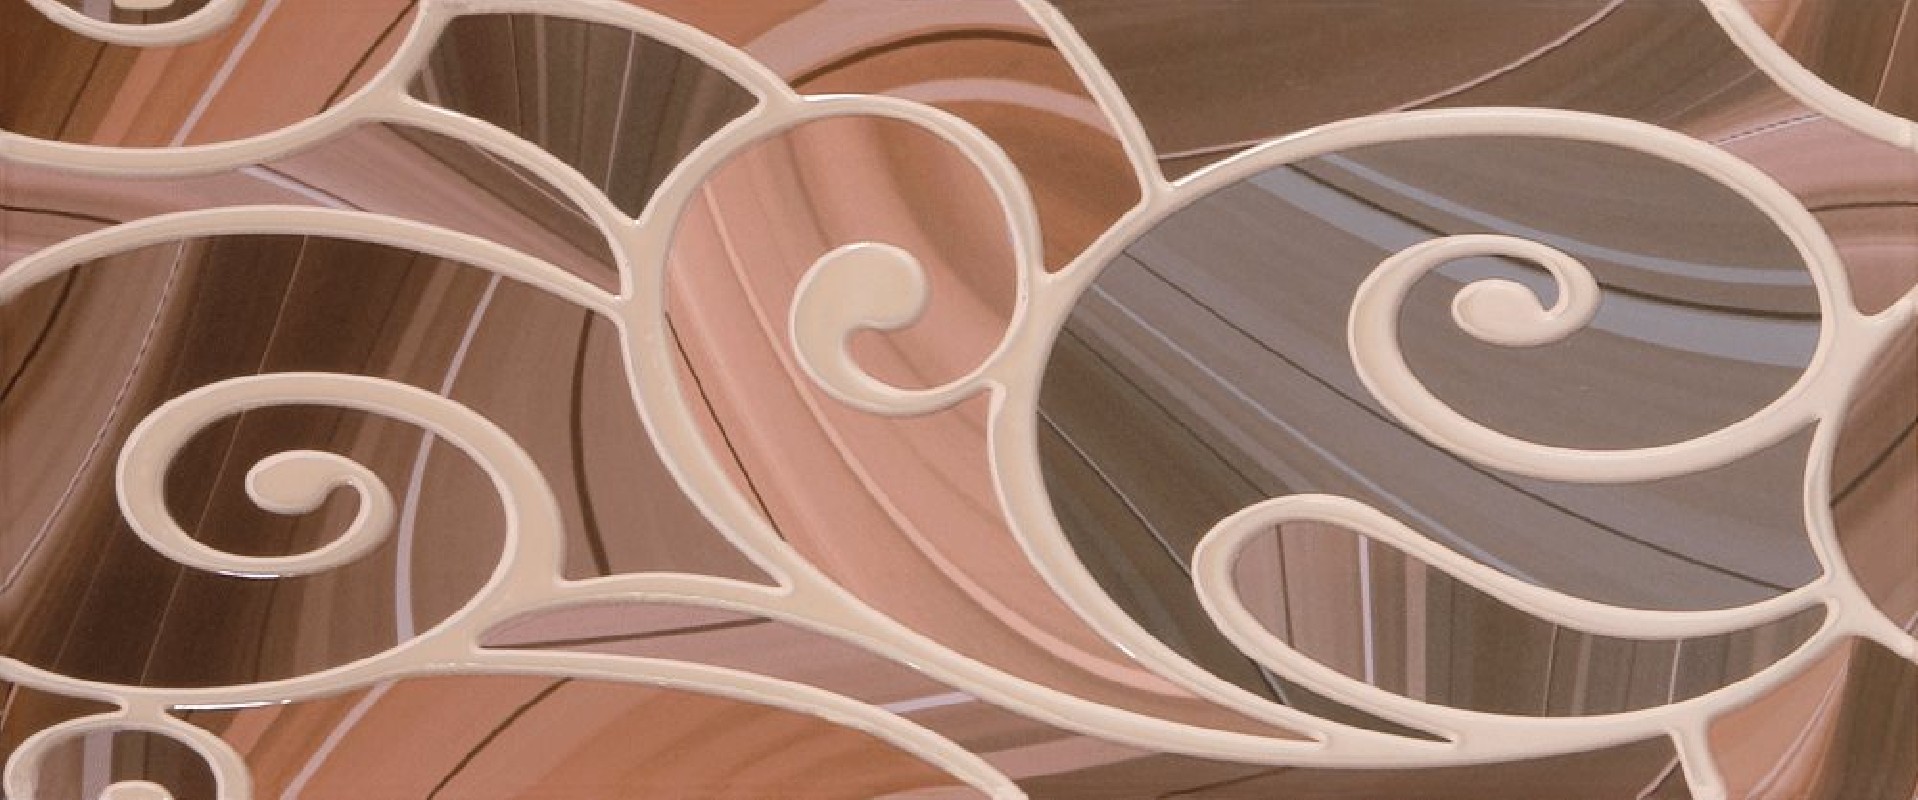 Керамическая плитка Arabeski venge / Арабески венге от Gracia Ceramica купить в интернет-магазине mkplitka.ru - 5